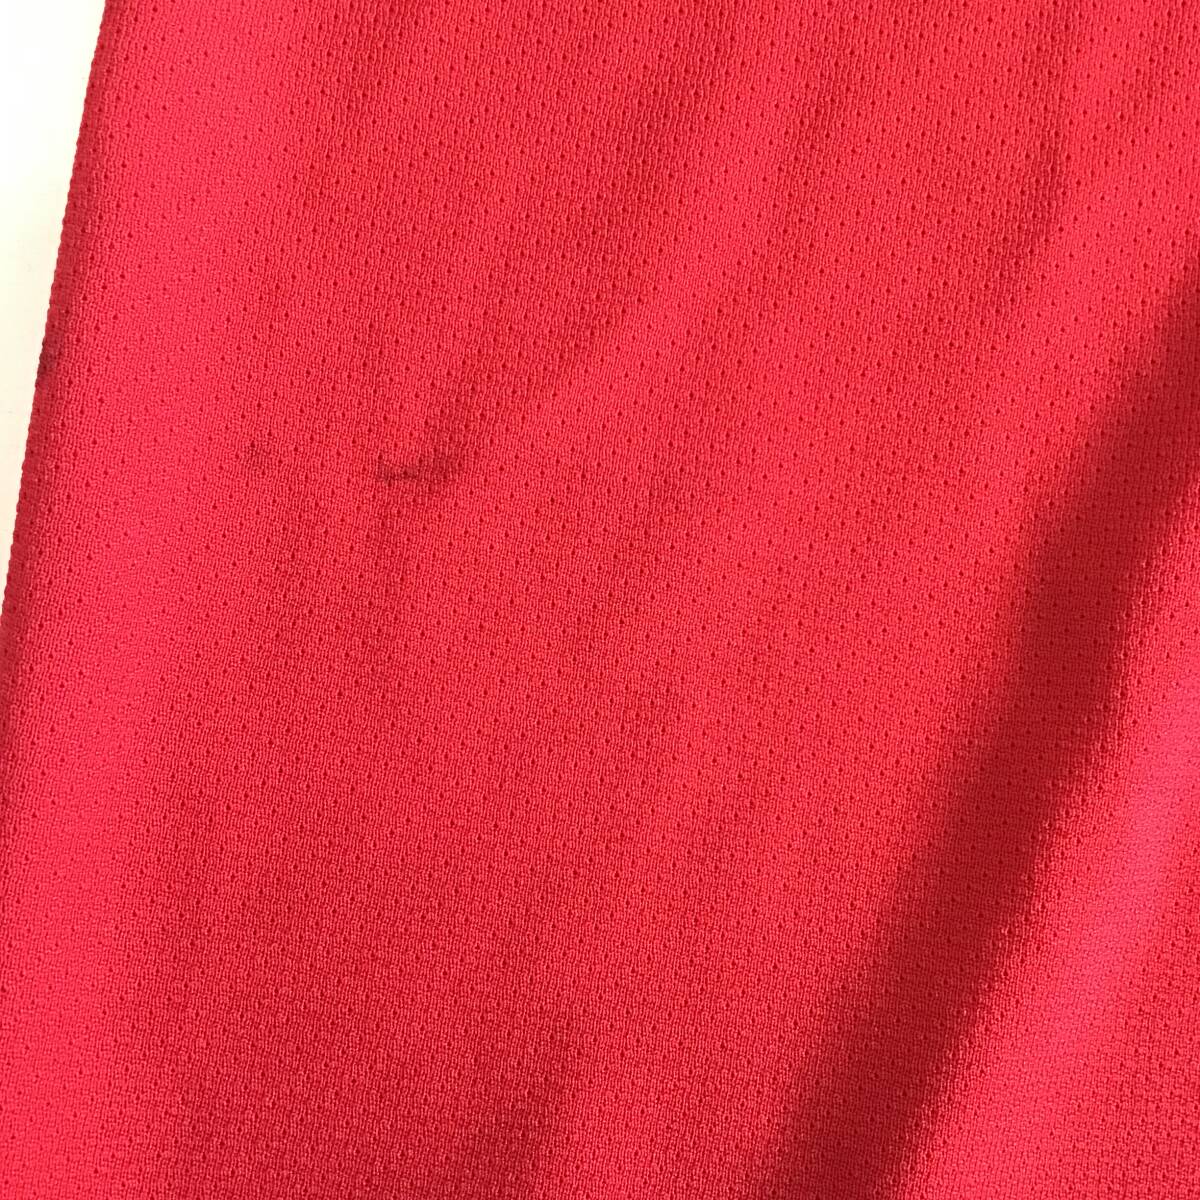 《 H 191》Athletic Knit スポーツウェア スポーツTシャツ ホッケー ユニフォーム XL 赤 1円スタート アメリカ古着 古着卸_画像5